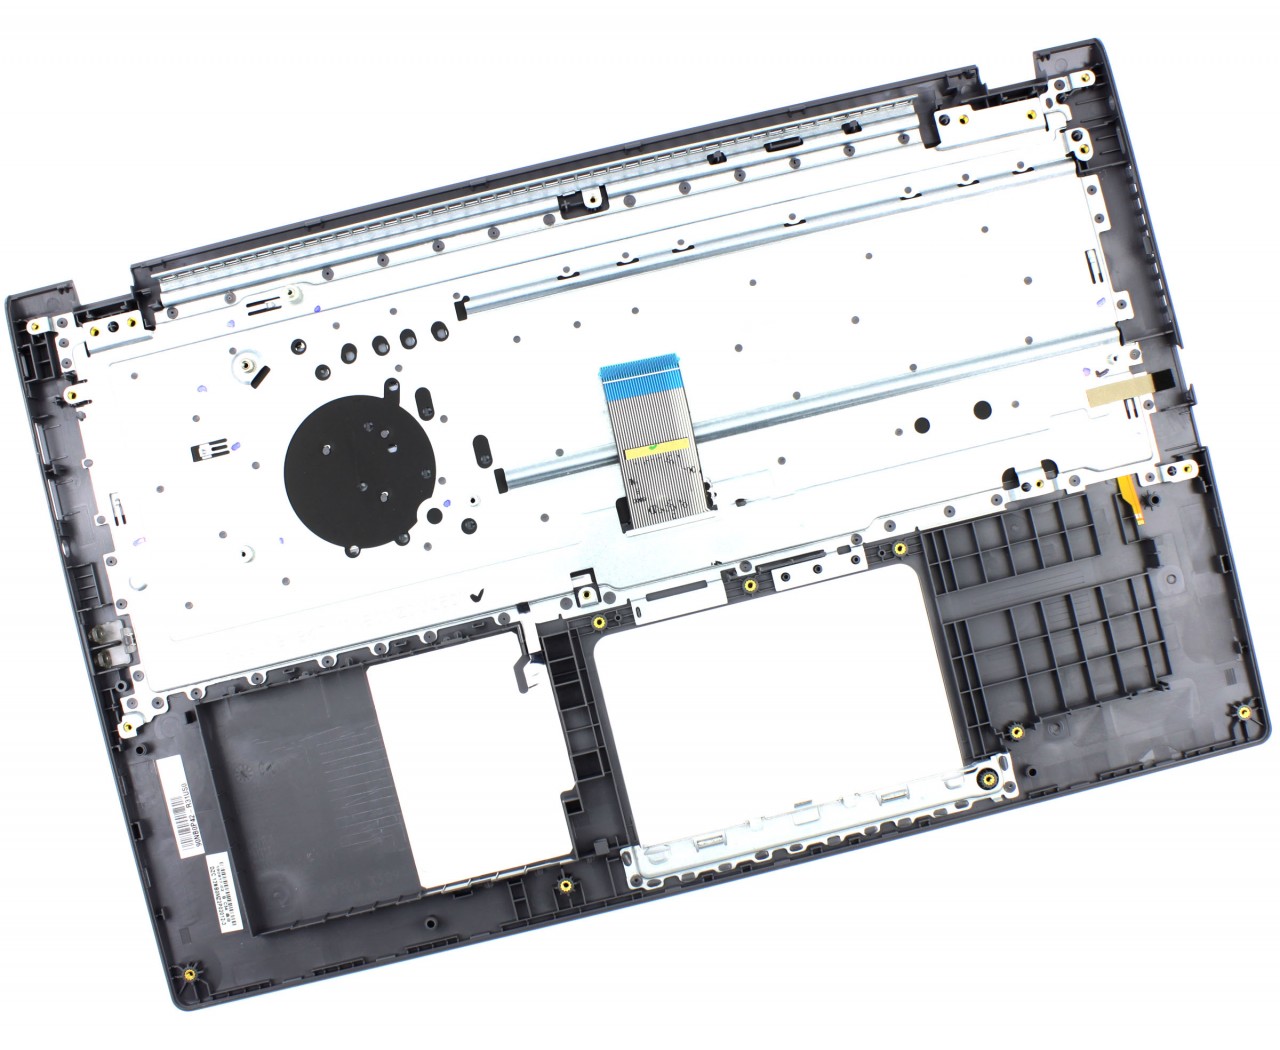 Tastatura Asus VivoBook 15 X509 Neagra cu Palmrest Gri iluminata backlit